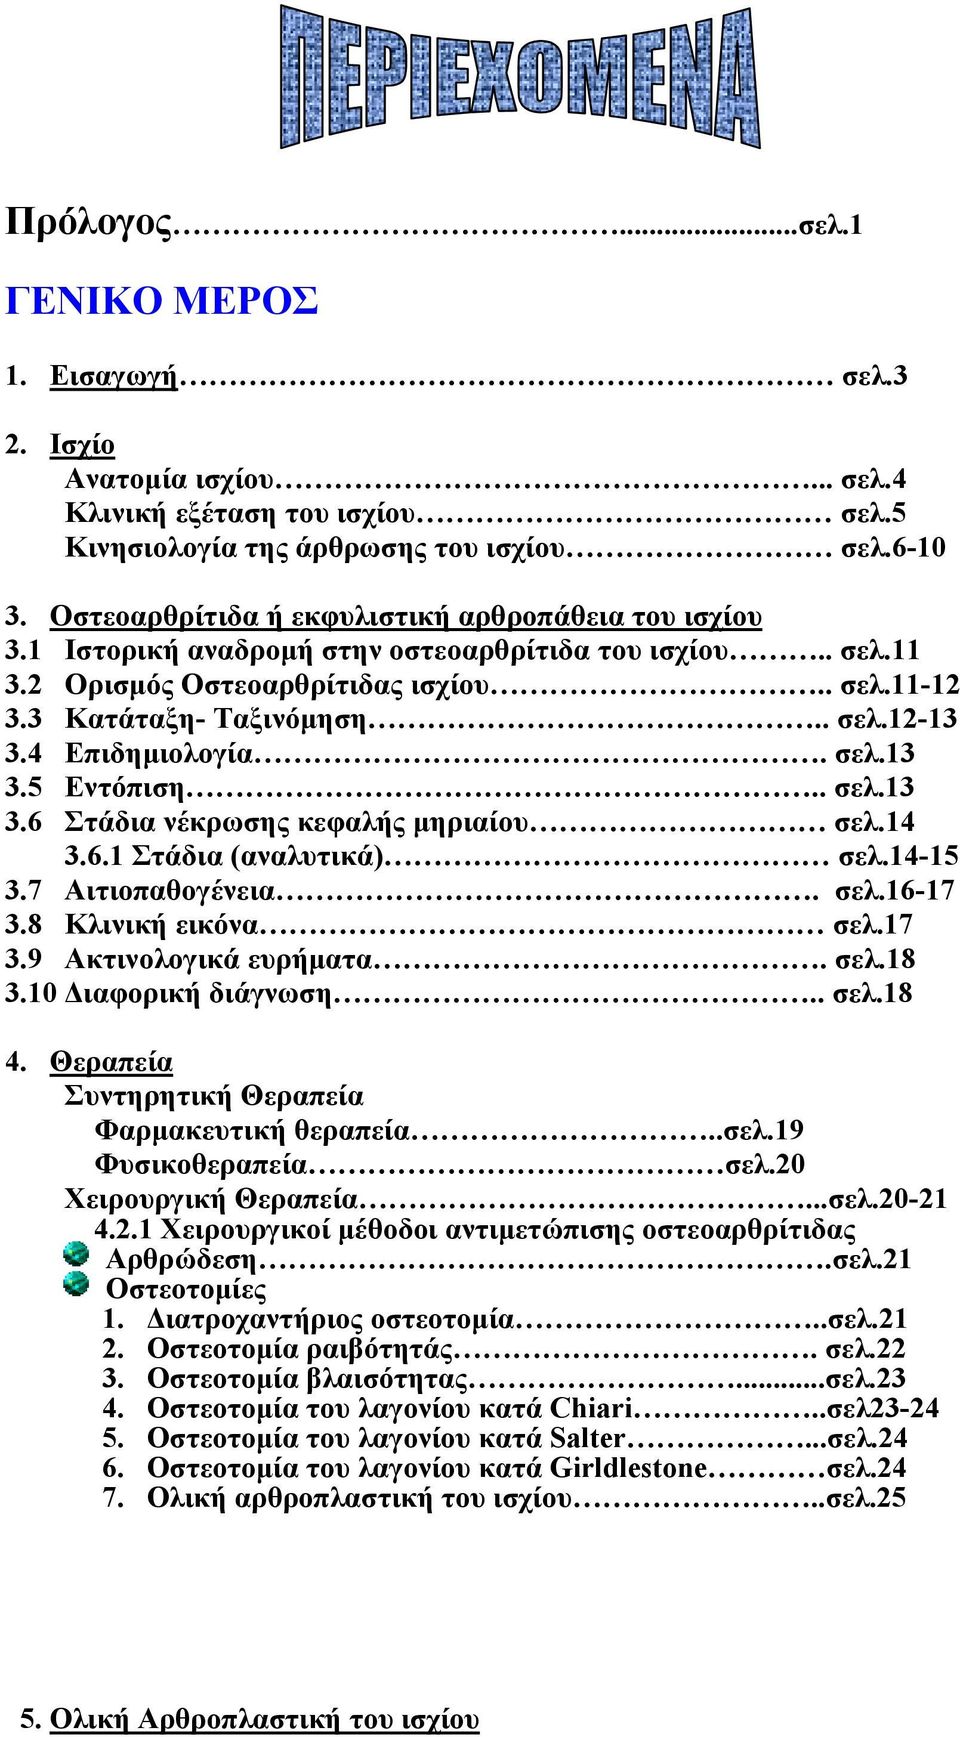 4 Επιδημιολογία. σελ.13 3.5 Εντόπιση.. σελ.13 3.6 Στάδια νέκρωσης κεφαλής μηριαίου σελ.14 3.6.1 Στάδια (αναλυτικά) σελ.14-15 3.7 Αιτιοπαθογένεια. σελ.16-17 3.8 Κλινική εικόνα σελ.17 3.9 Ακτινολογικά ευρήματα.